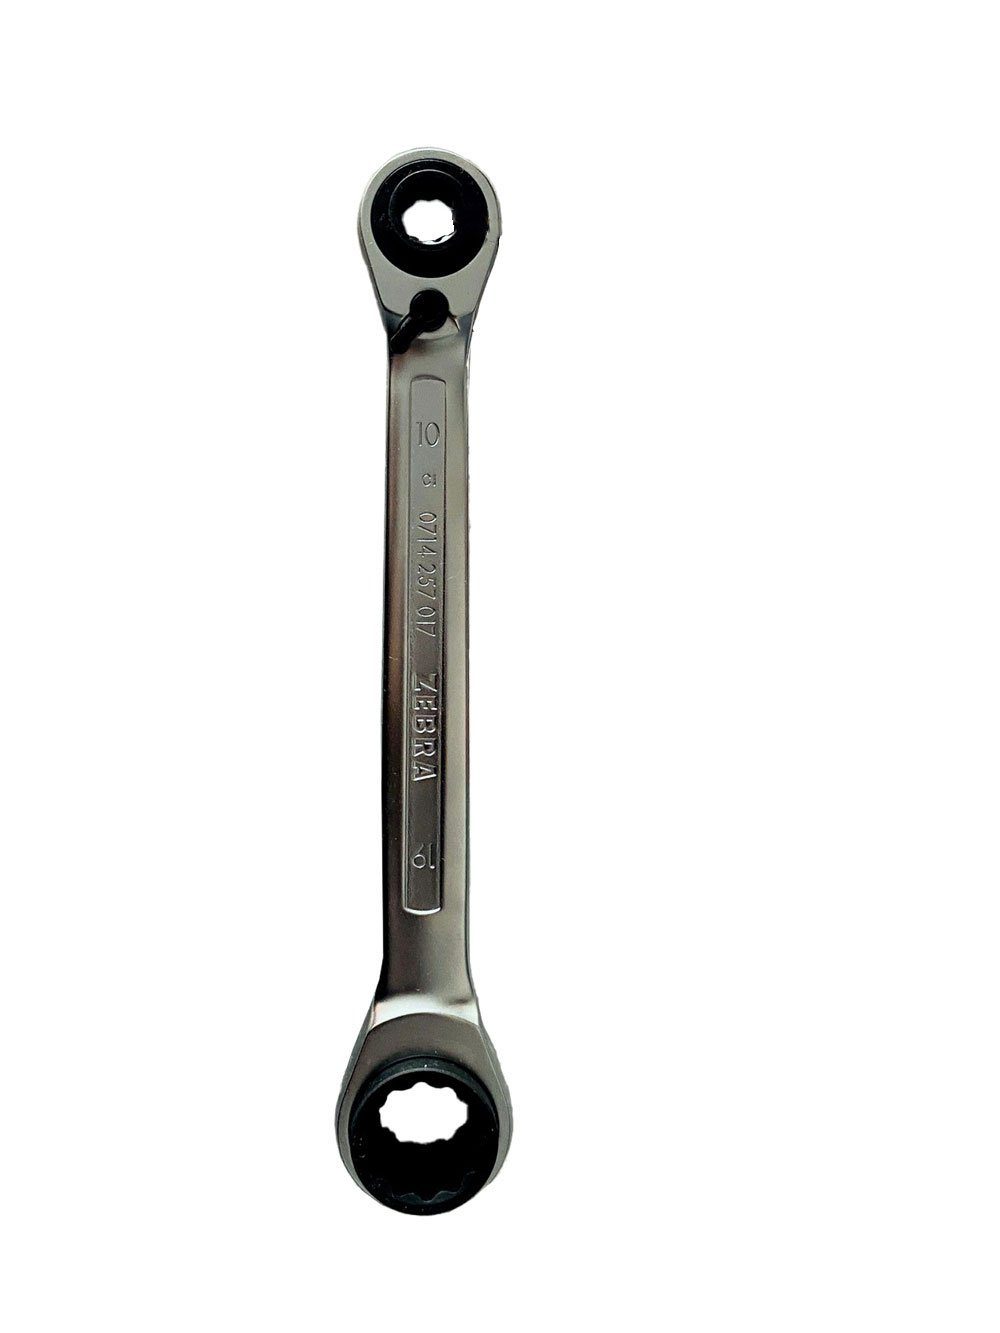 Ratschenringschlüssel Doppelring- 10 Würth 13 x17mm (1 1 + Ratschenschlüssel Würth 4 Metrisch St) in x19